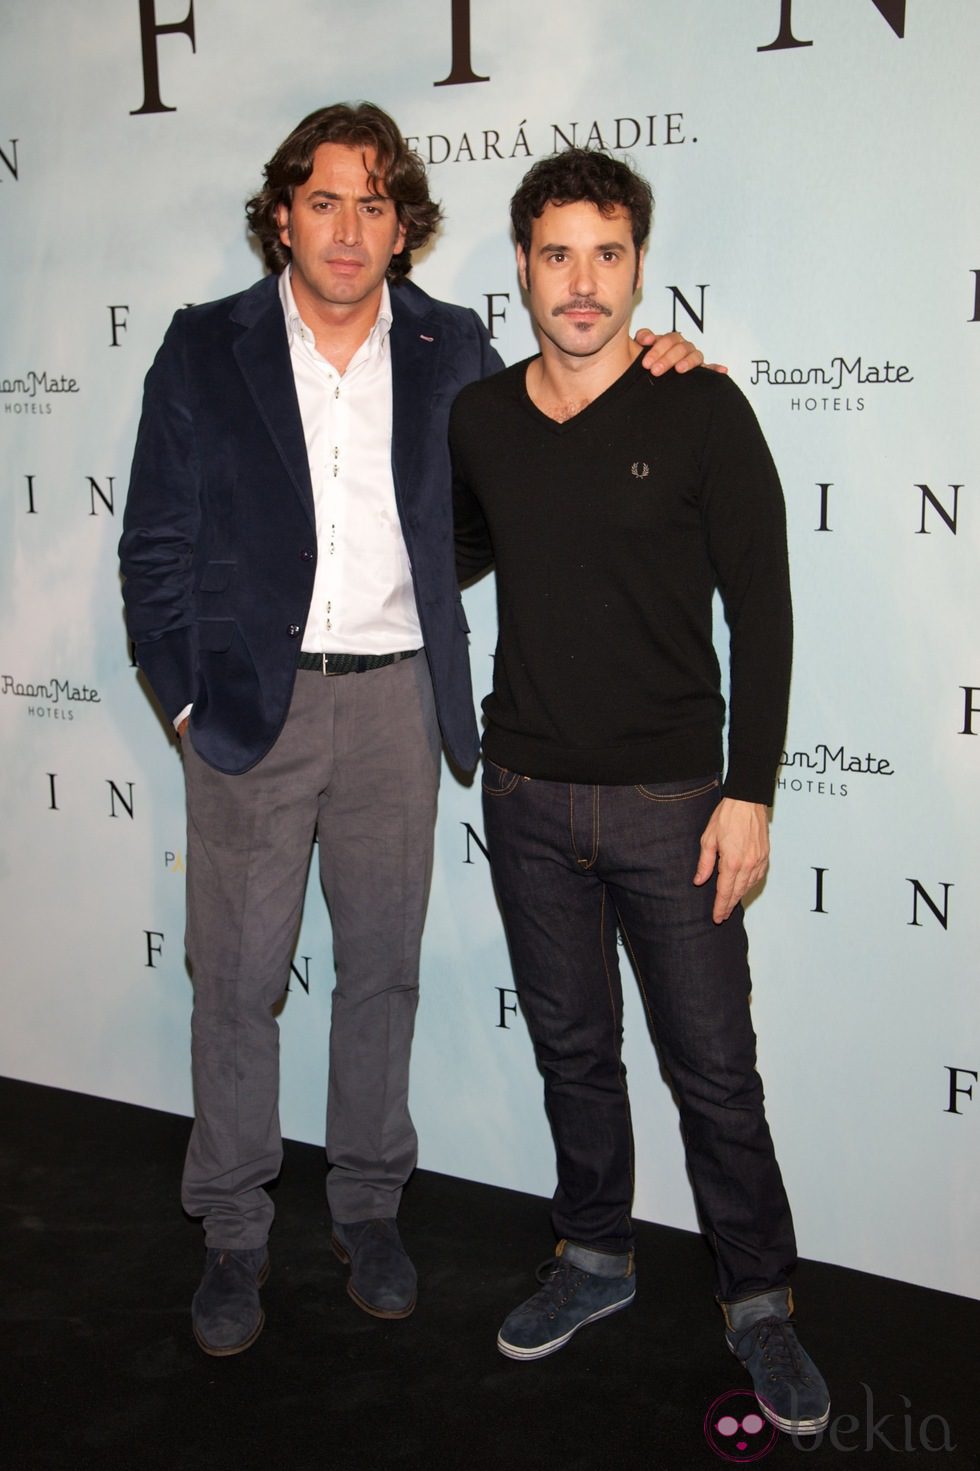 Antonio Garrido y Miquel Fernández en el photocall de 'Fin' en Madrid